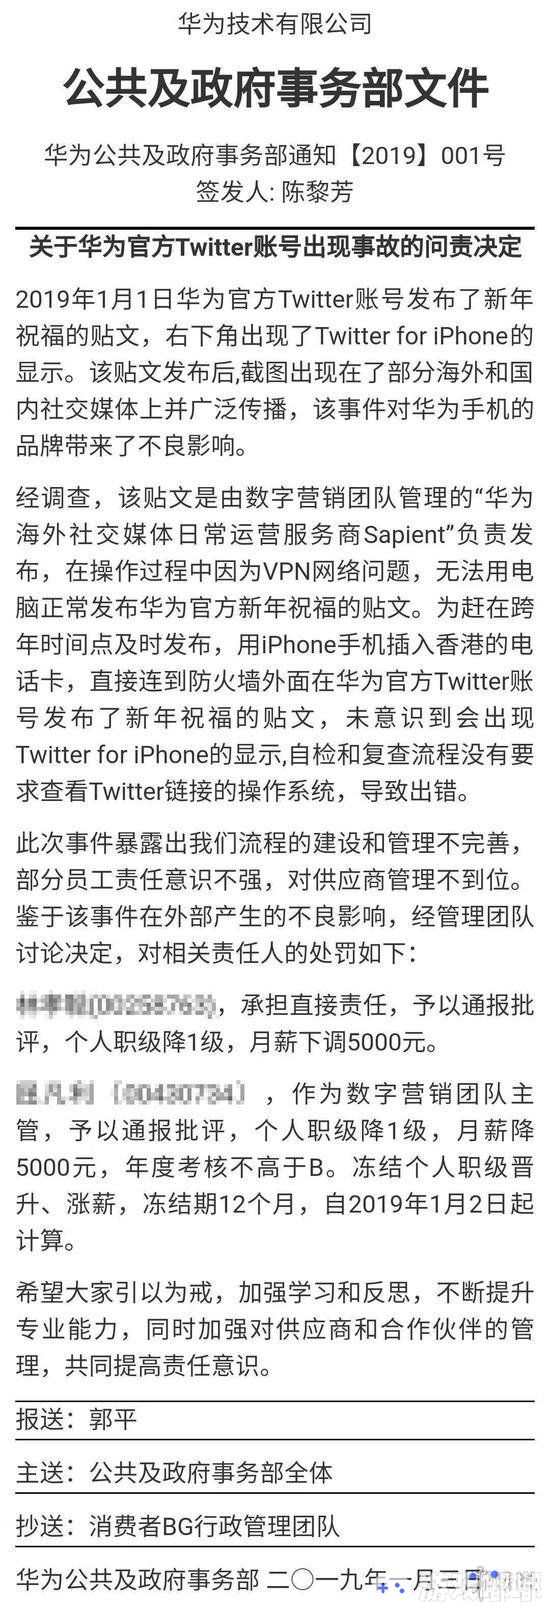 近日，华为官方发布“华为官方推特用苹果发祝福事故”处罚文件，责任人职级降1级，月薪下调5000元。